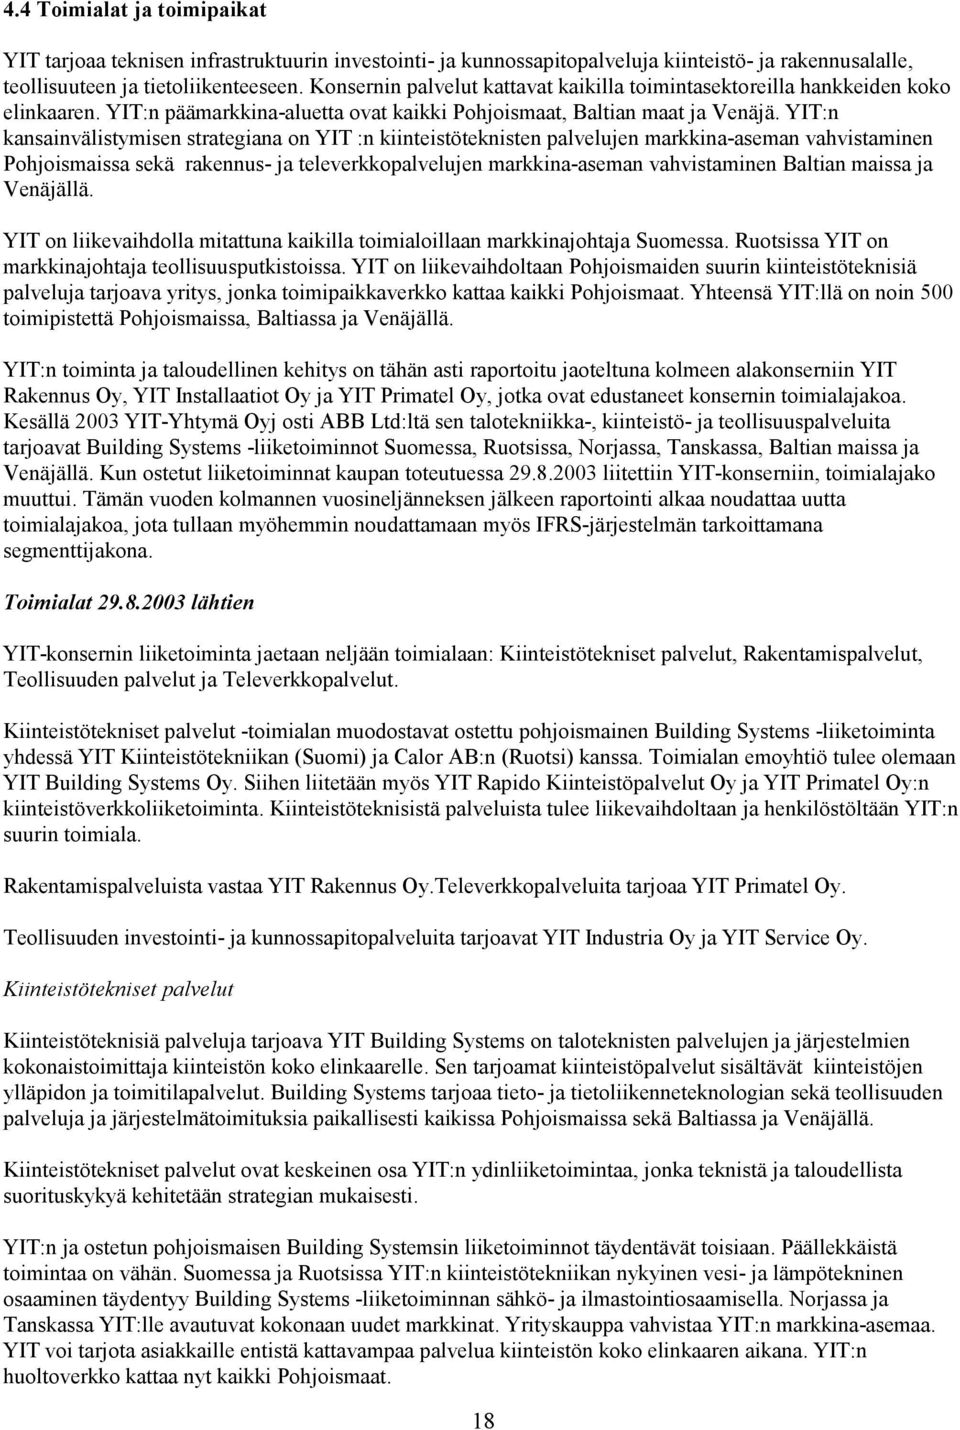 YIT:n kansainvälistymisen strategiana on YIT :n kiinteistöteknisten palvelujen markkina-aseman vahvistaminen Pohjoismaissa sekä rakennus- ja televerkkopalvelujen markkina-aseman vahvistaminen Baltian